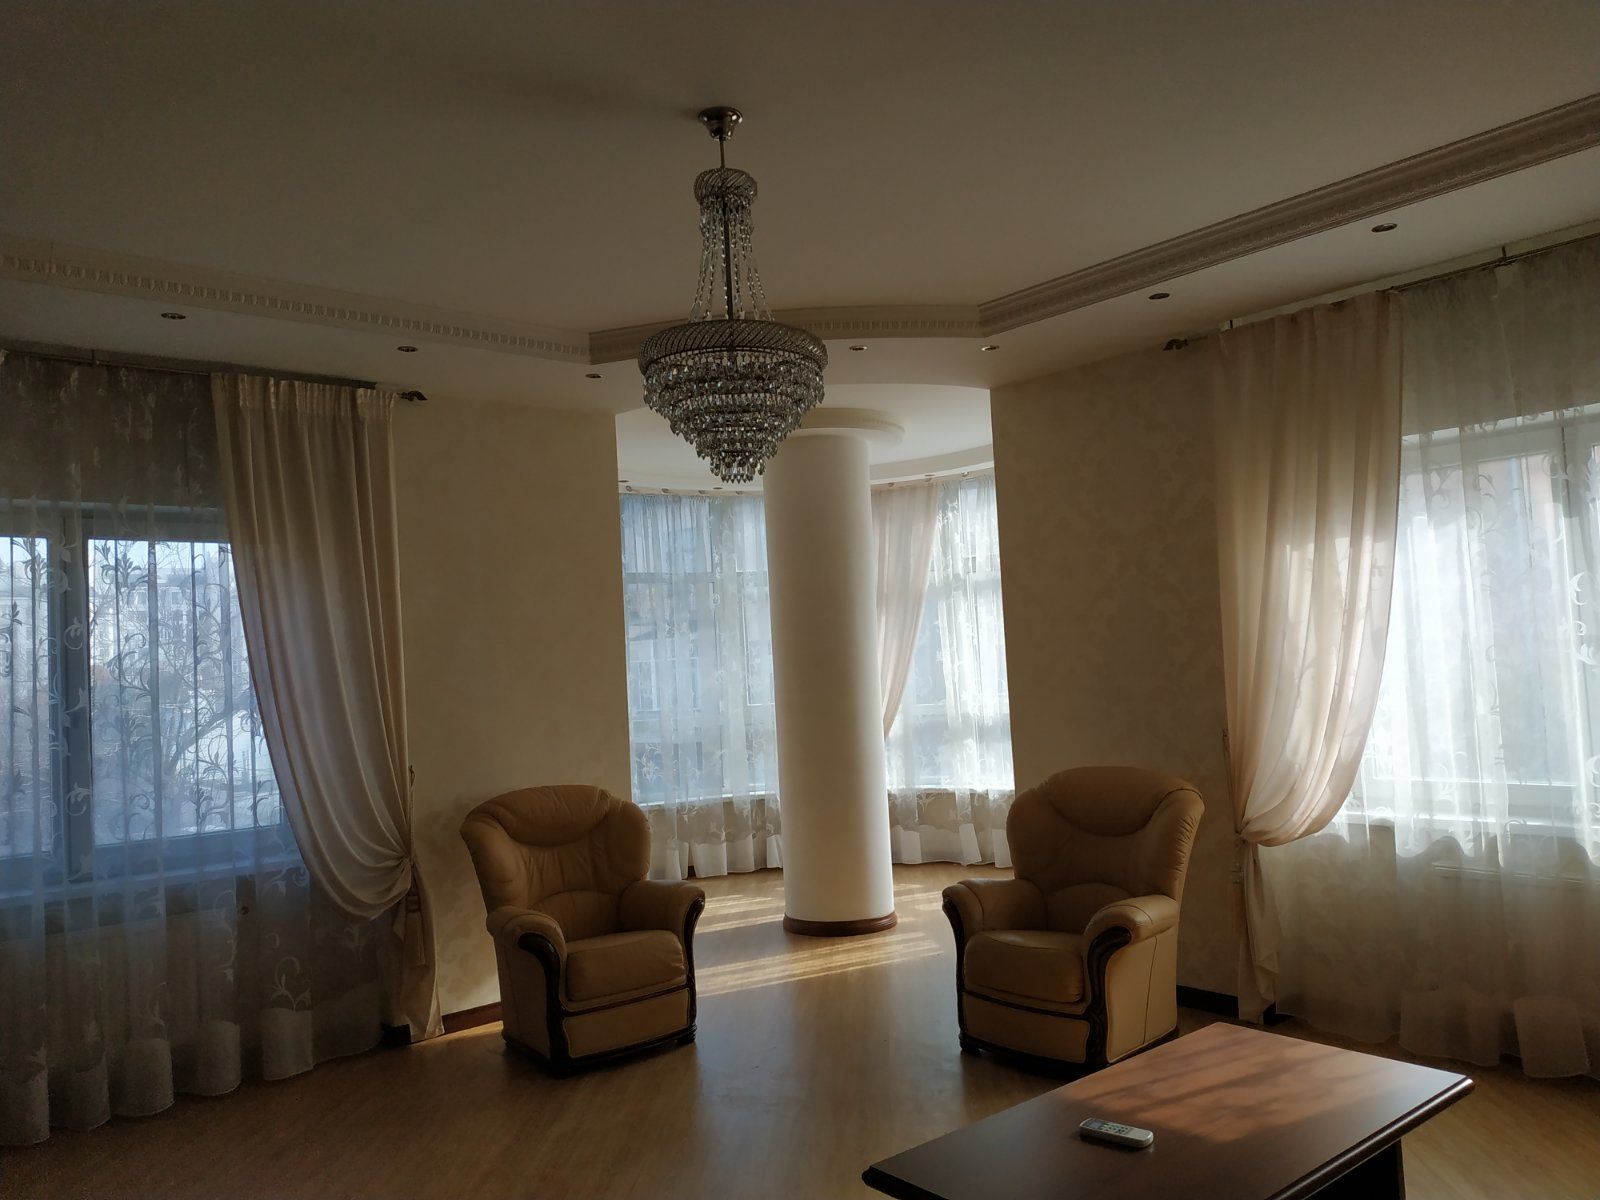 Продается 3-х комнатная квартира на Французском бульваре в ЖК"Марсель"